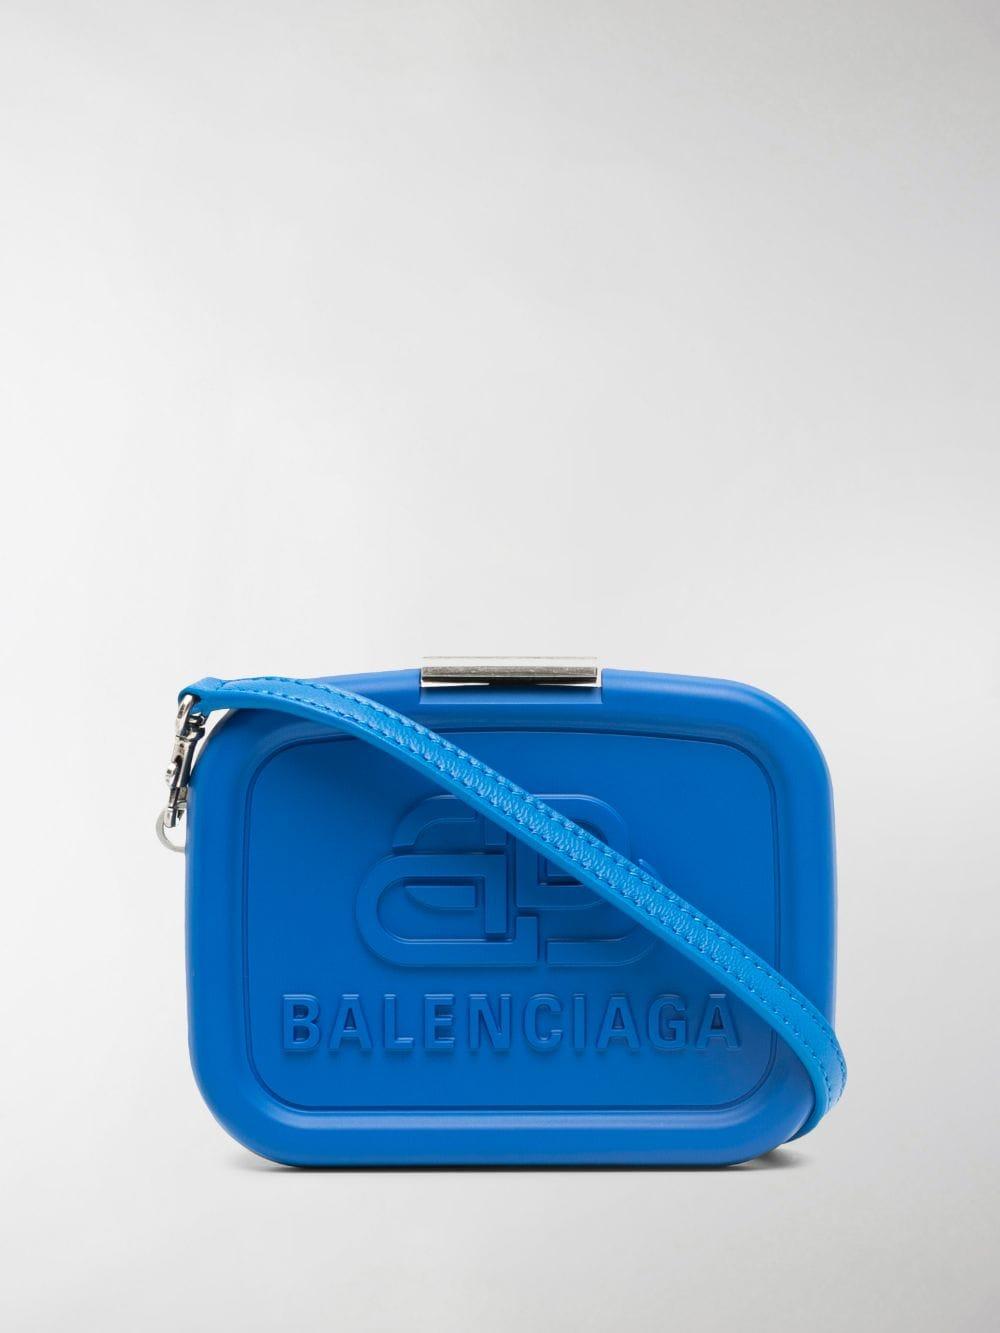 Balenciaga Lunch Box Mini Leather Case Bag in Blue | Lyst